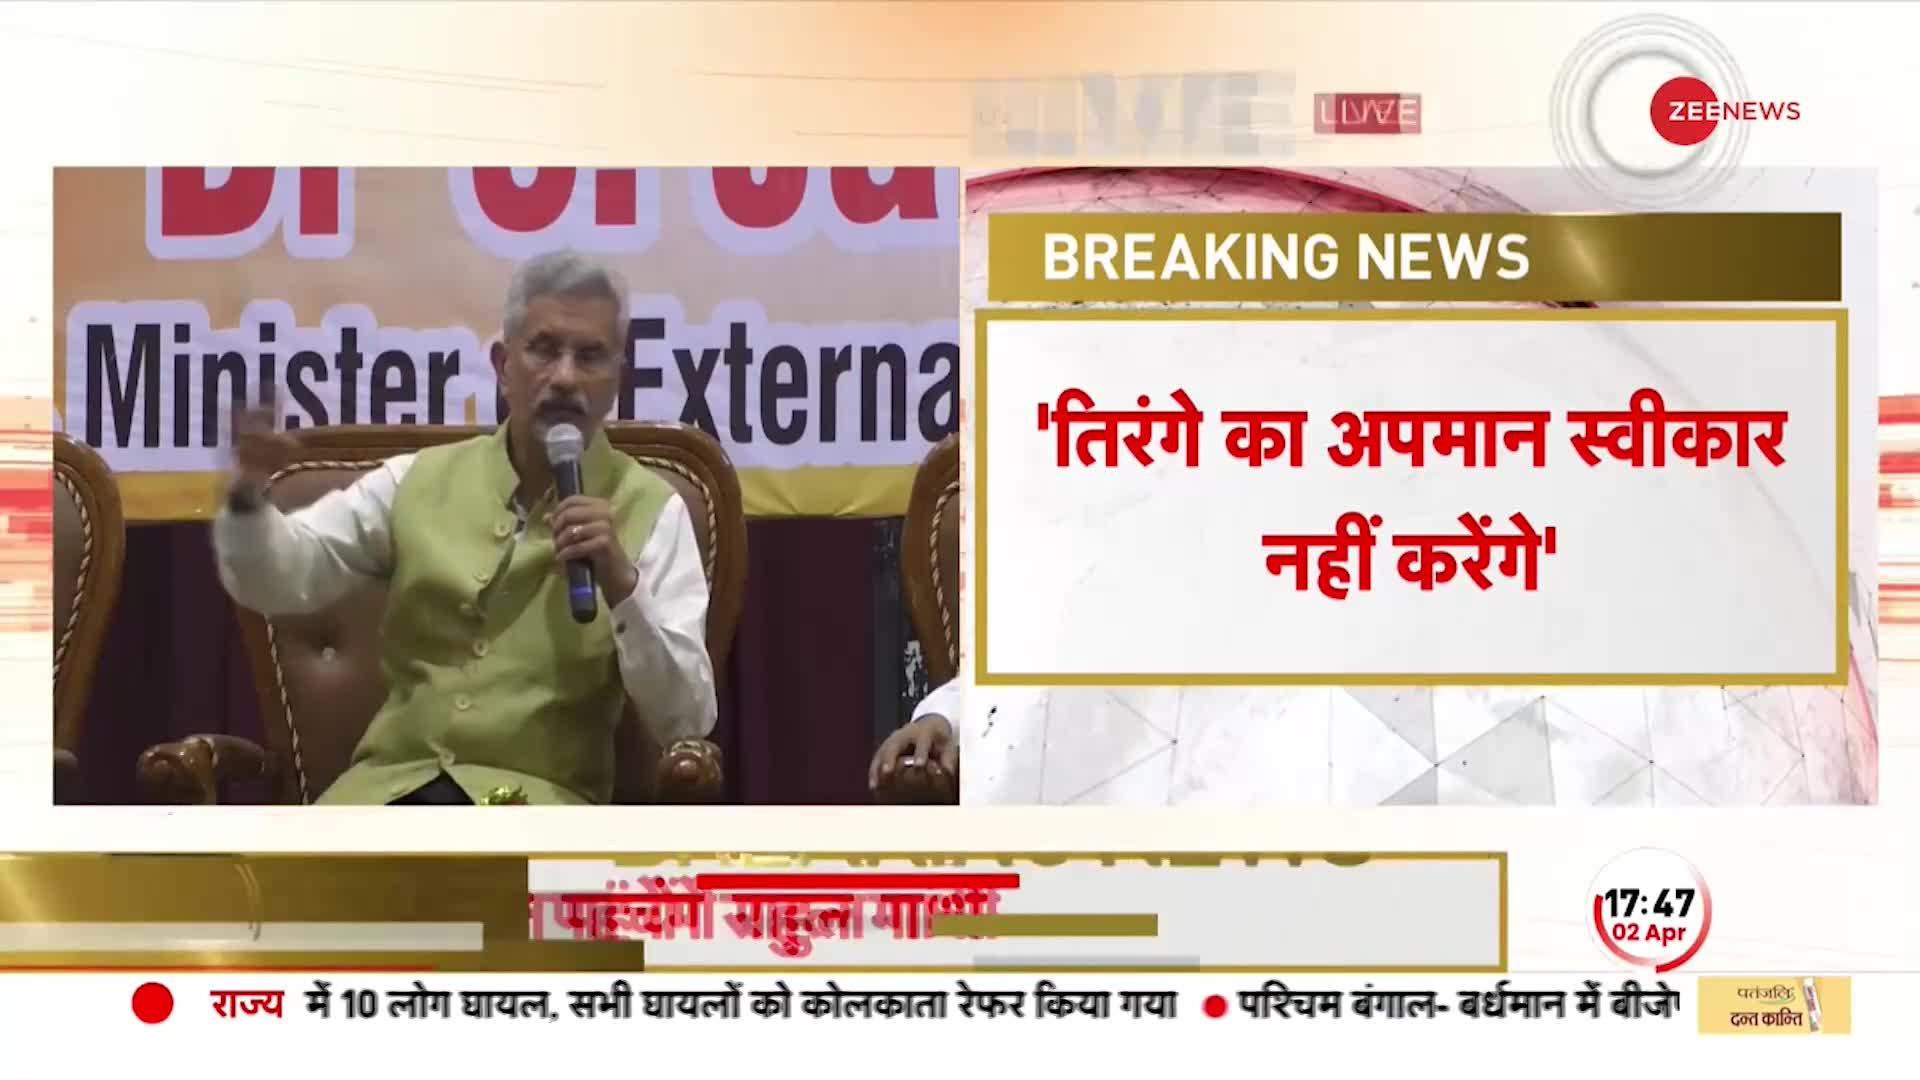 विदेश मंत्री S Jaishankar का बड़ा बयान, कहा- तिरंगे का अपमान स्वीकार नहीं करेंगे |